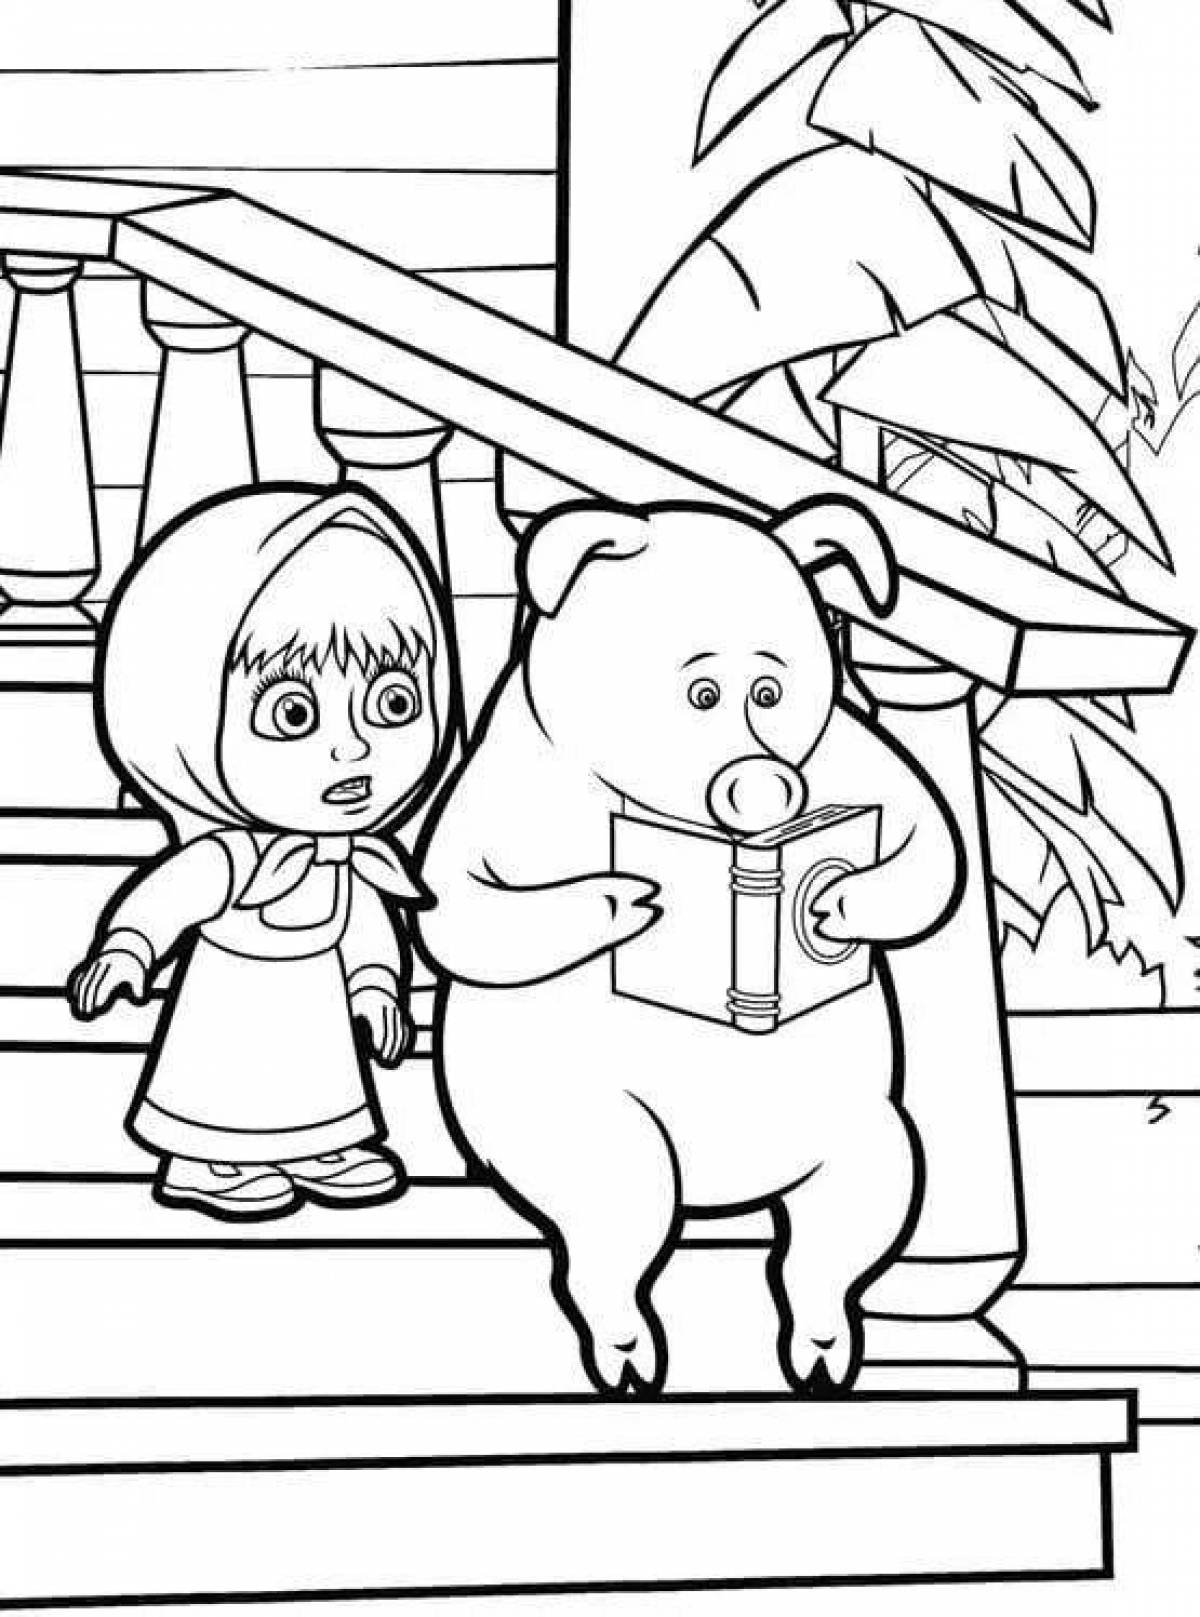 Маша и медведь - Распечатать раскраску для детей